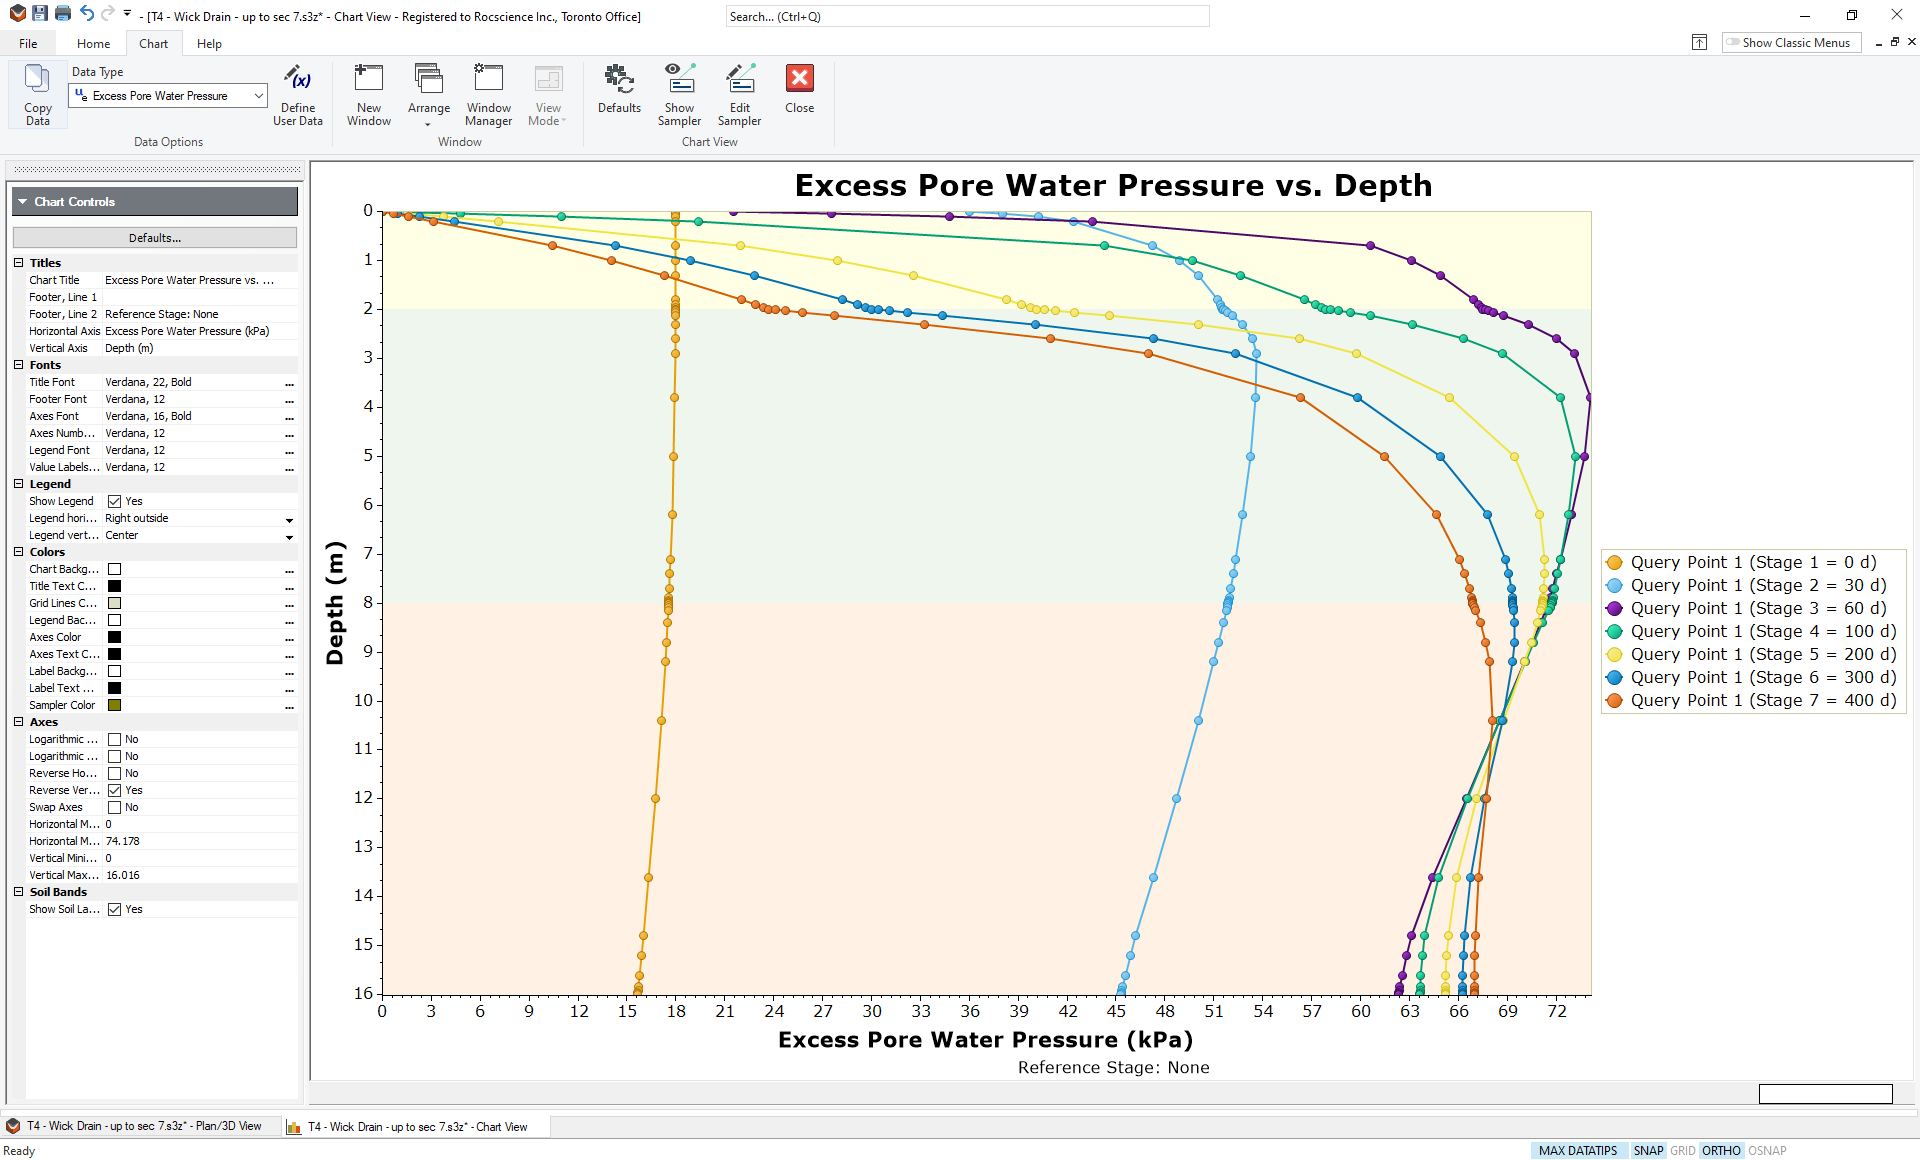 Excess Pore Water Pressure vs. Depth